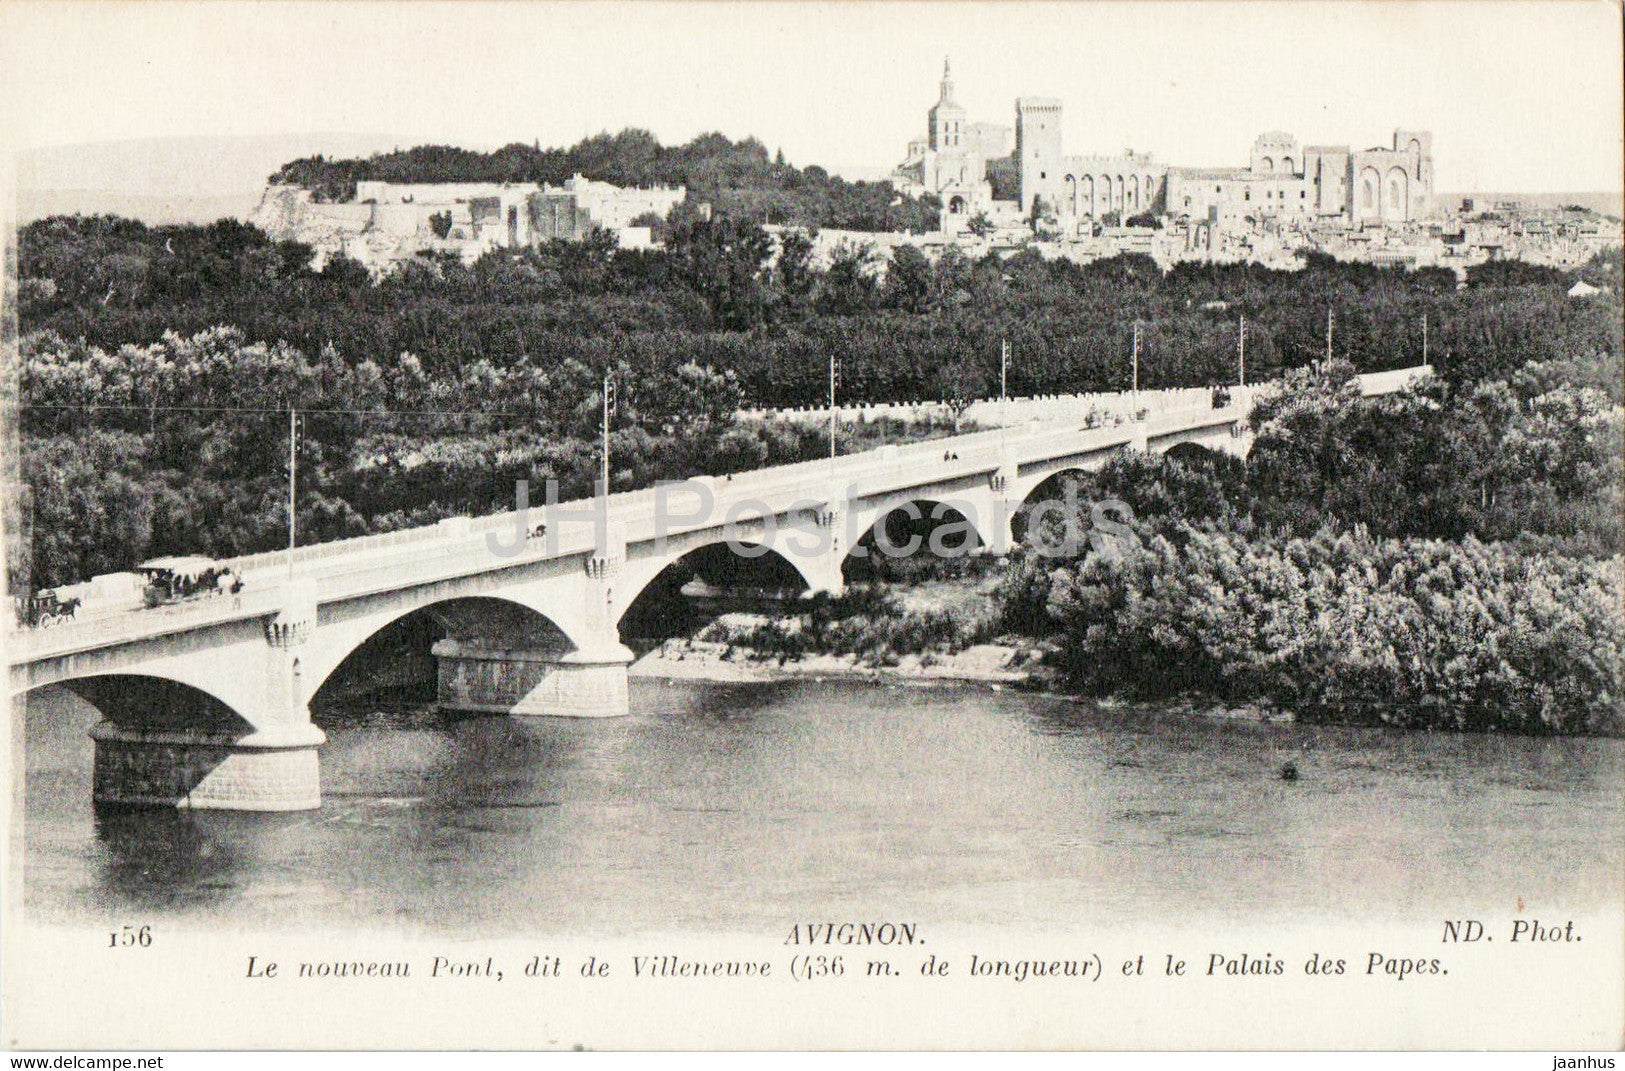 Avignon - Le Nouveau Pont dit Villeneuve et le Palais des Papes - bridge - 156 - old postcard - France - unused - JH Postcards